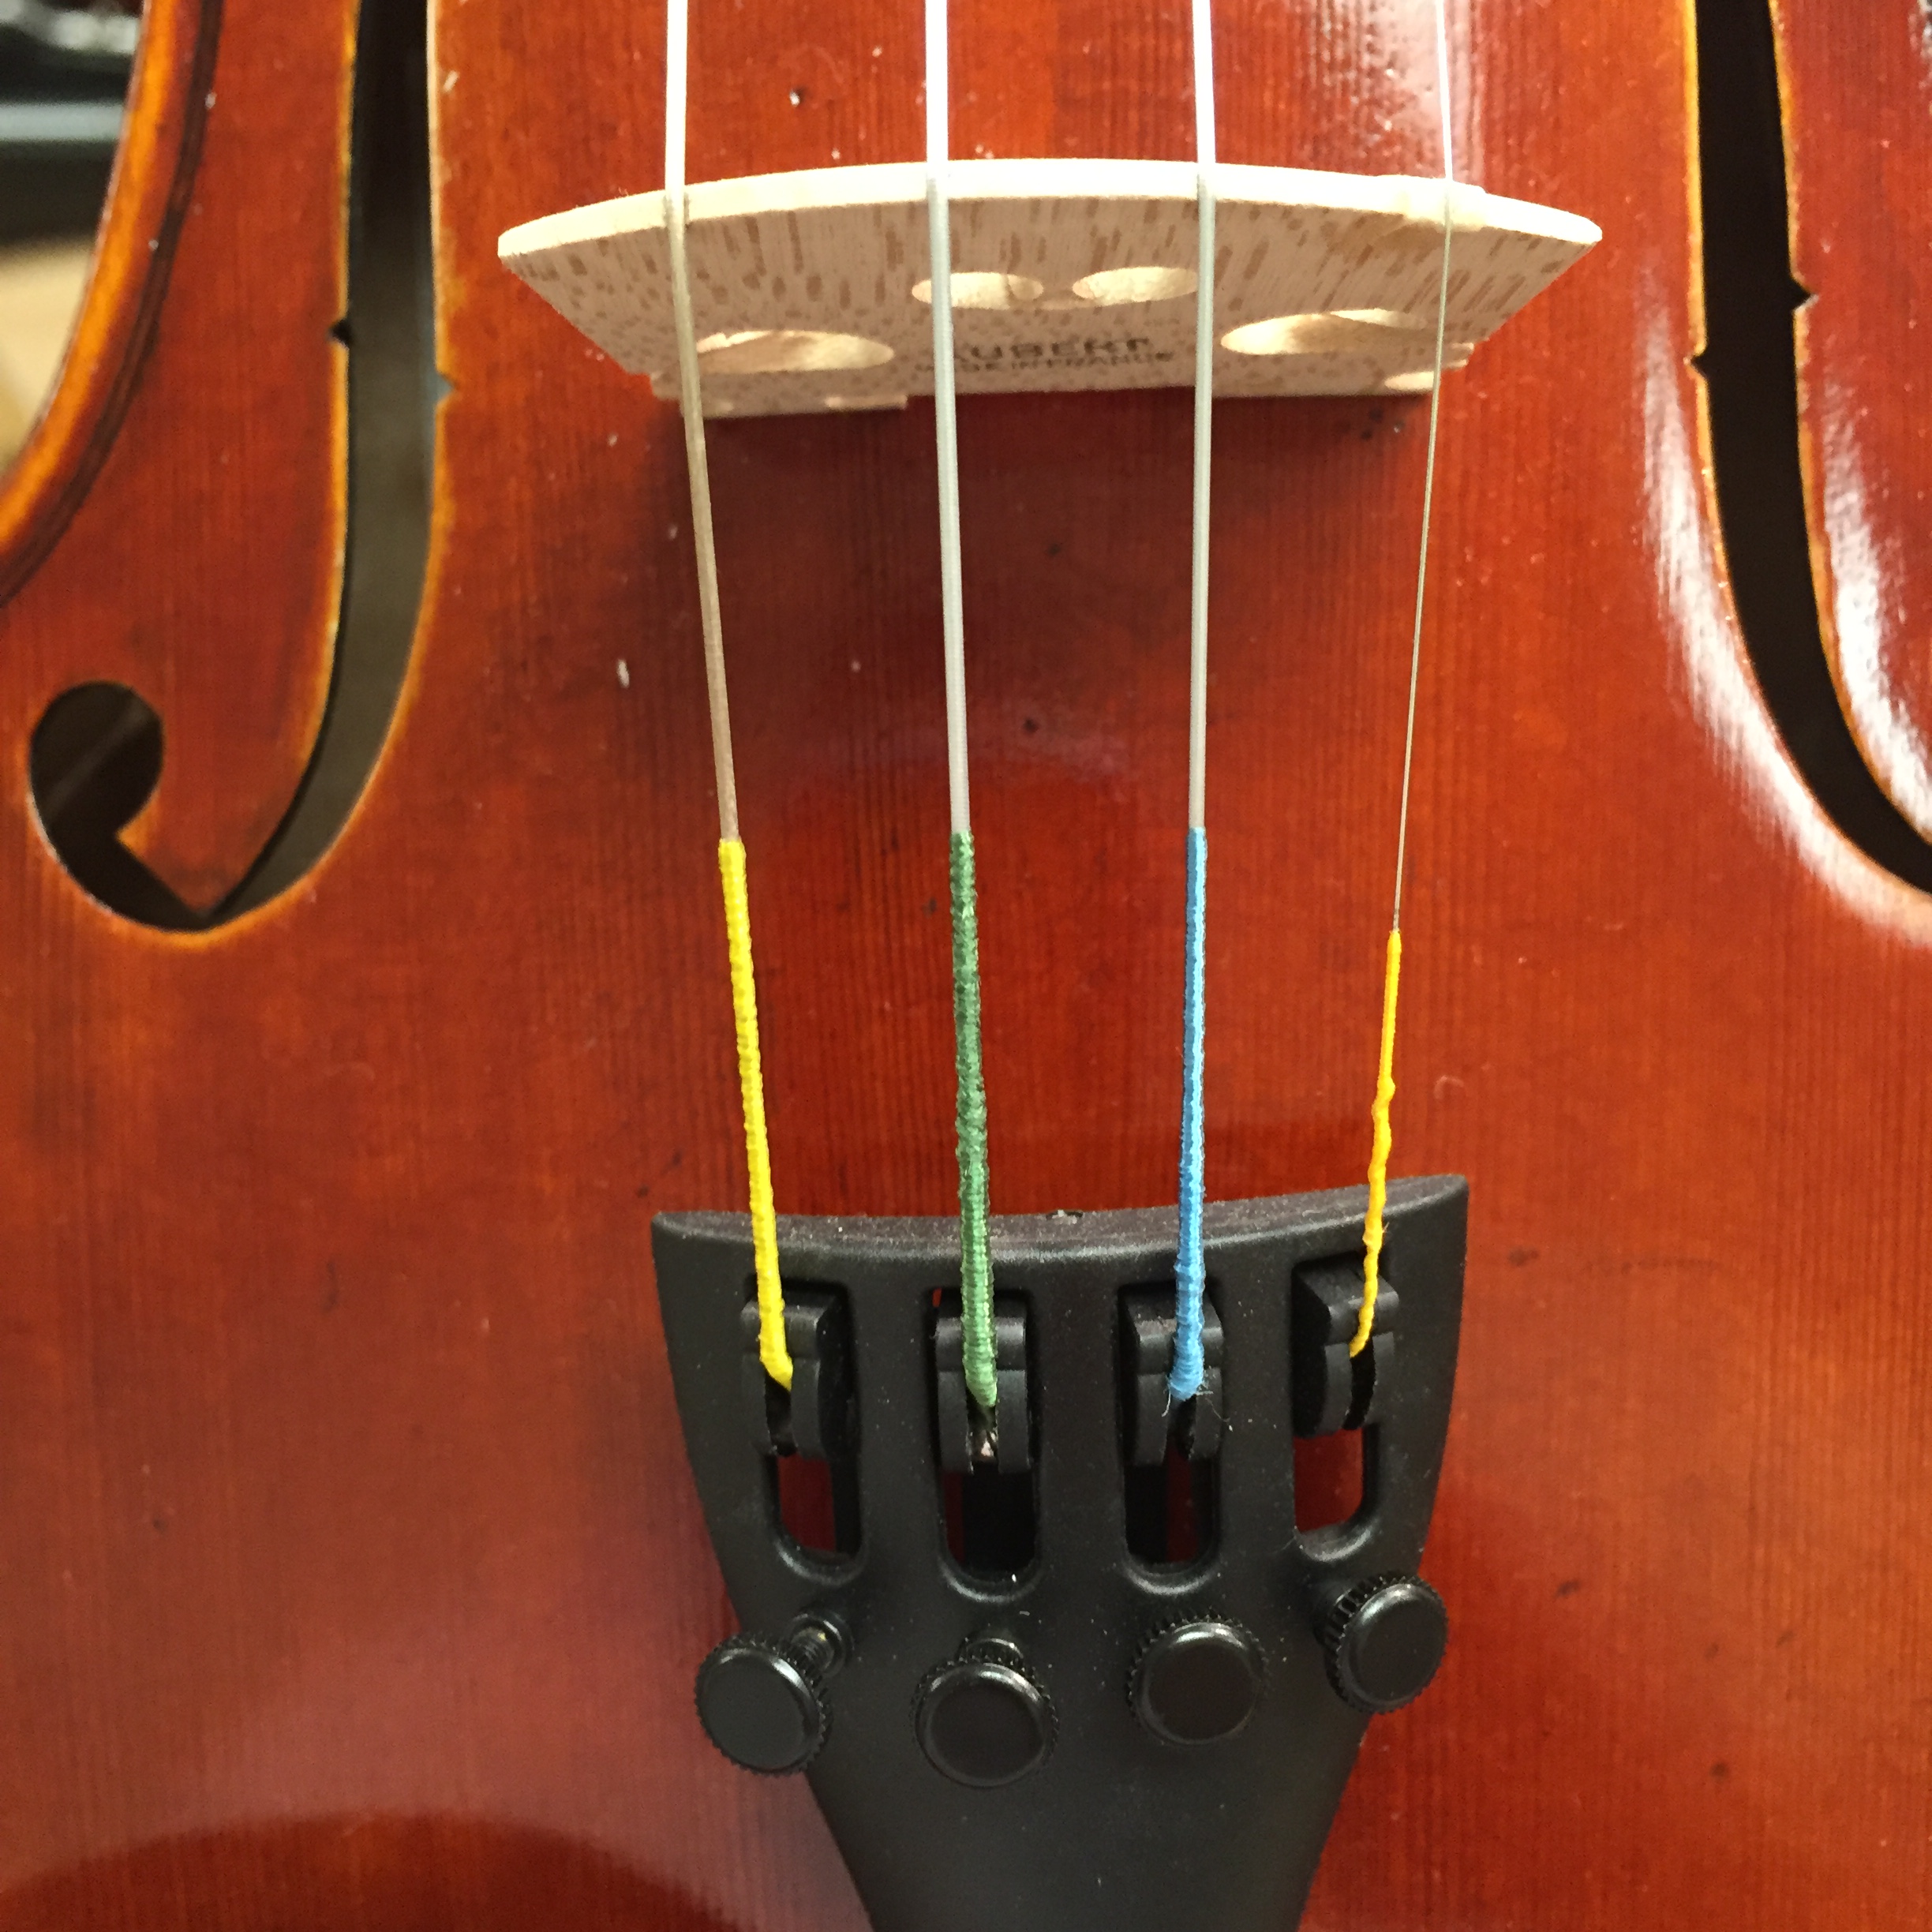 ヴァイオリンの弦を間違ってループエンドの弦を購入してしまいました - Yahoo!知恵袋